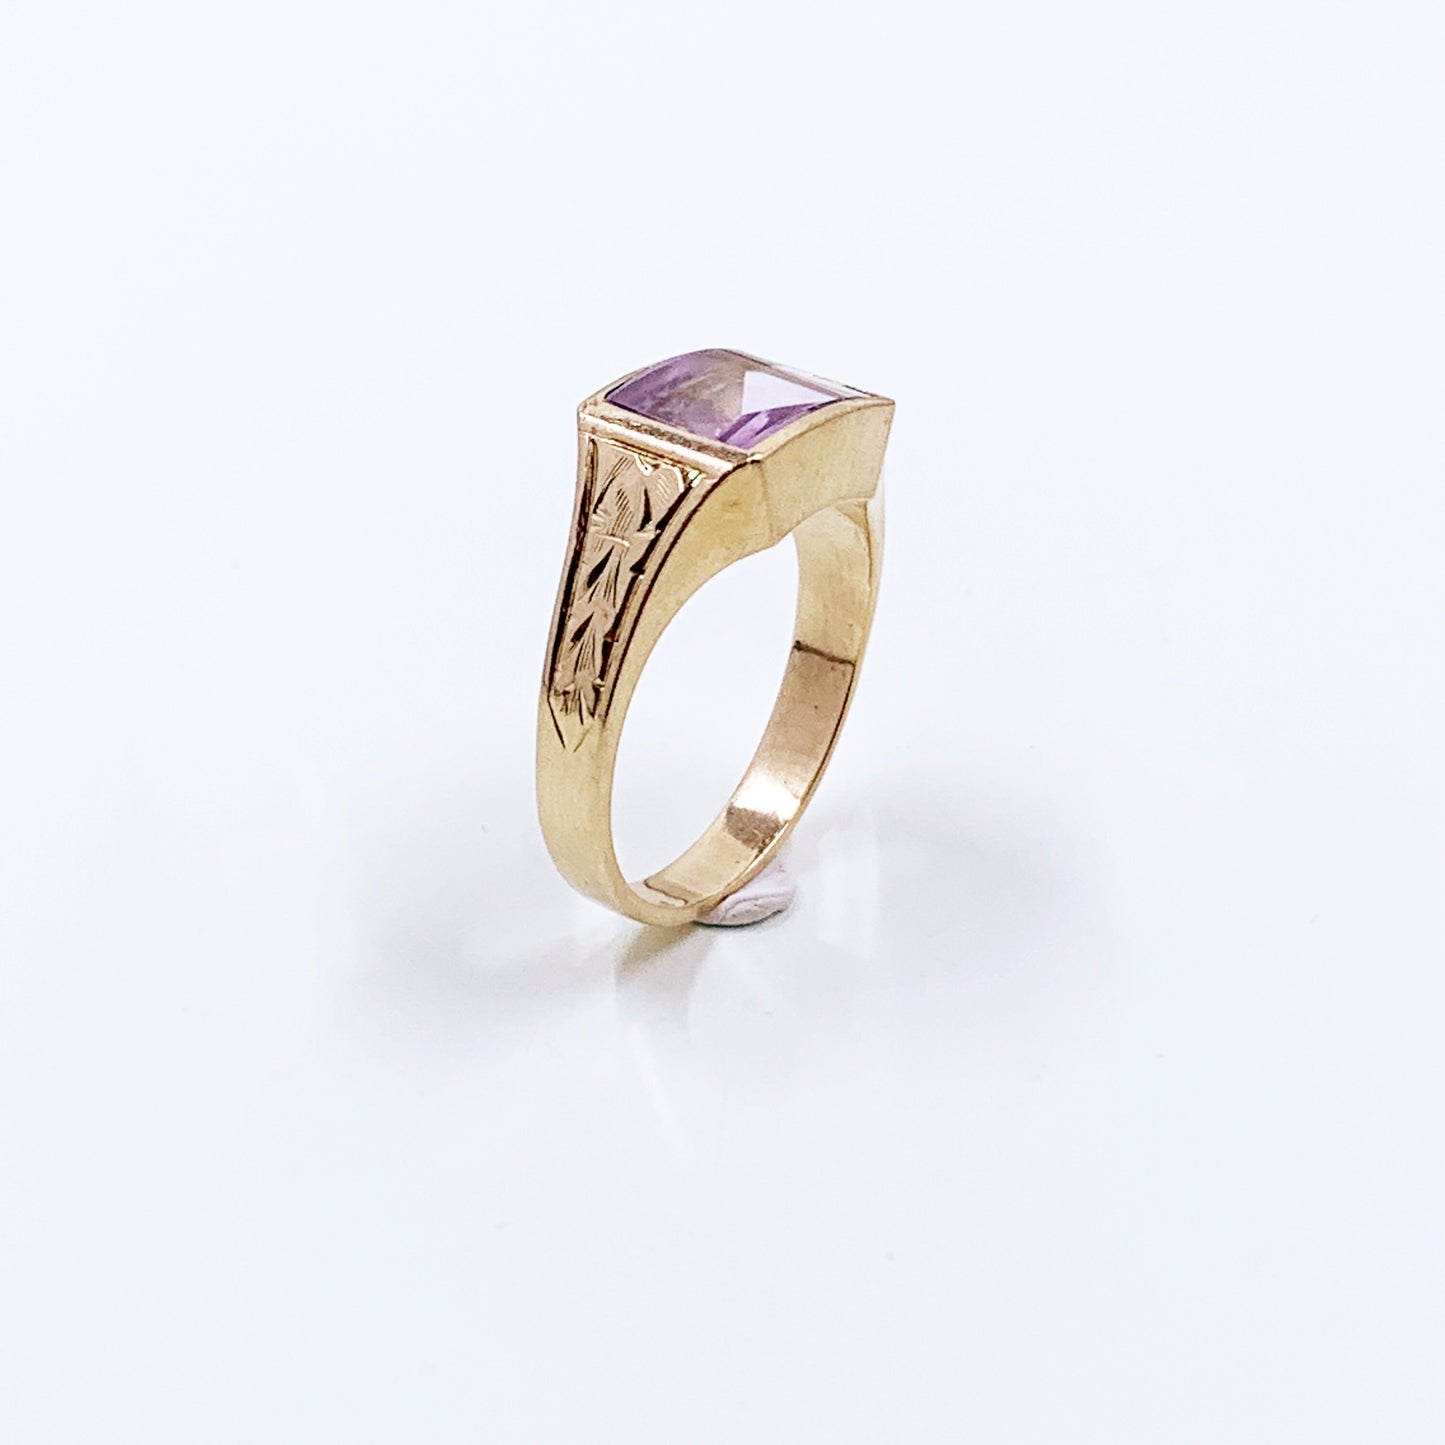 Vintage 10k Gold Lavender Amethyst Engraved Signet Ring | Size 8 1/2 Ring